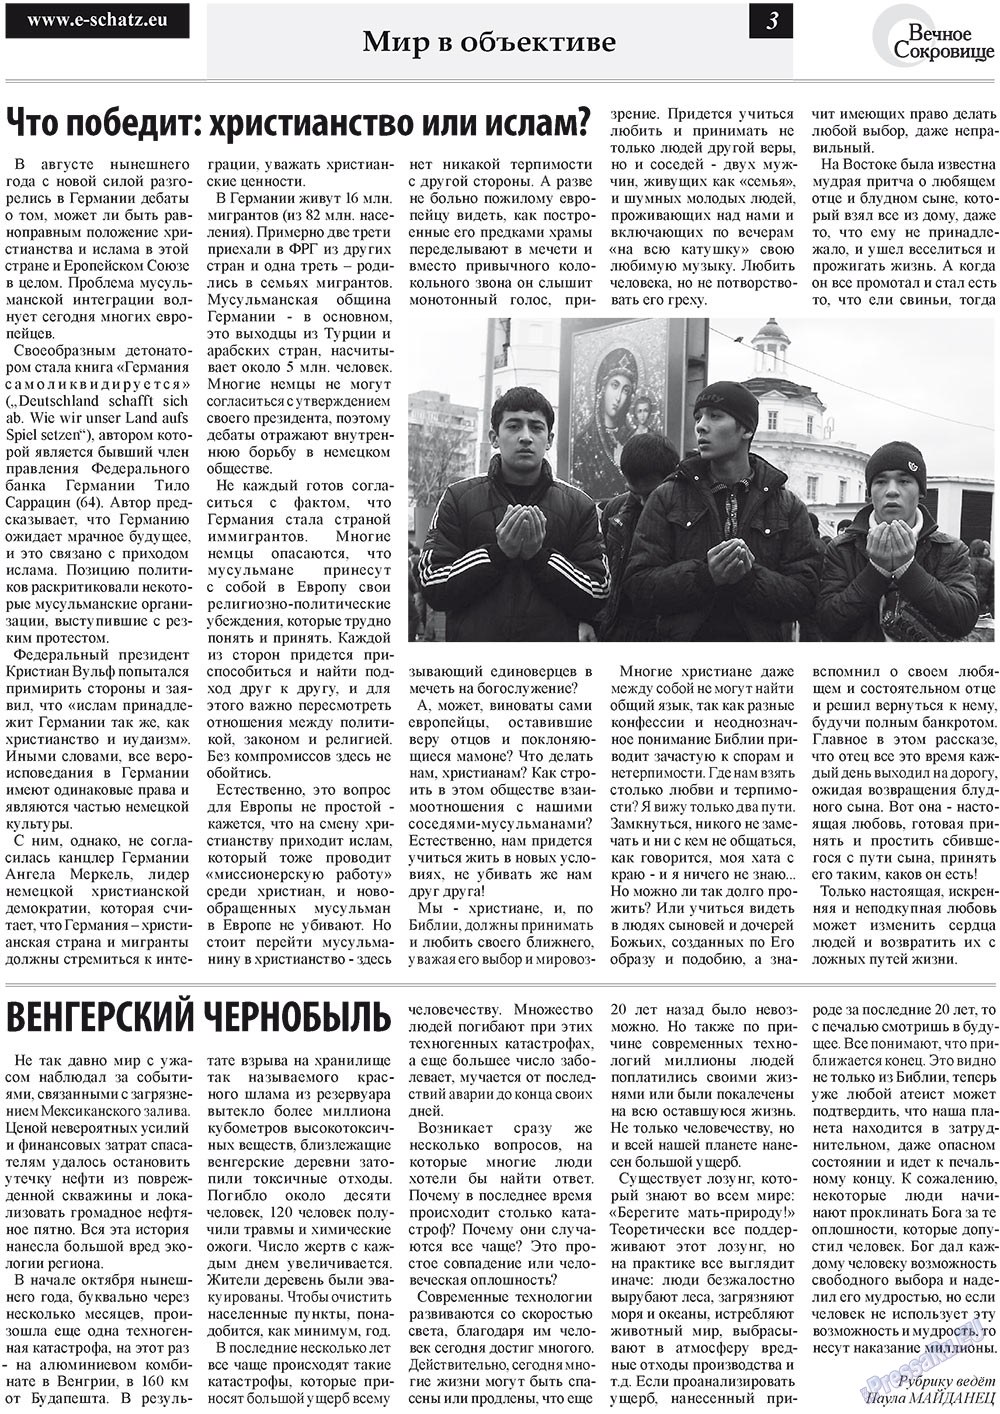 Вечное сокровище, газета. 2010 №4 стр.3